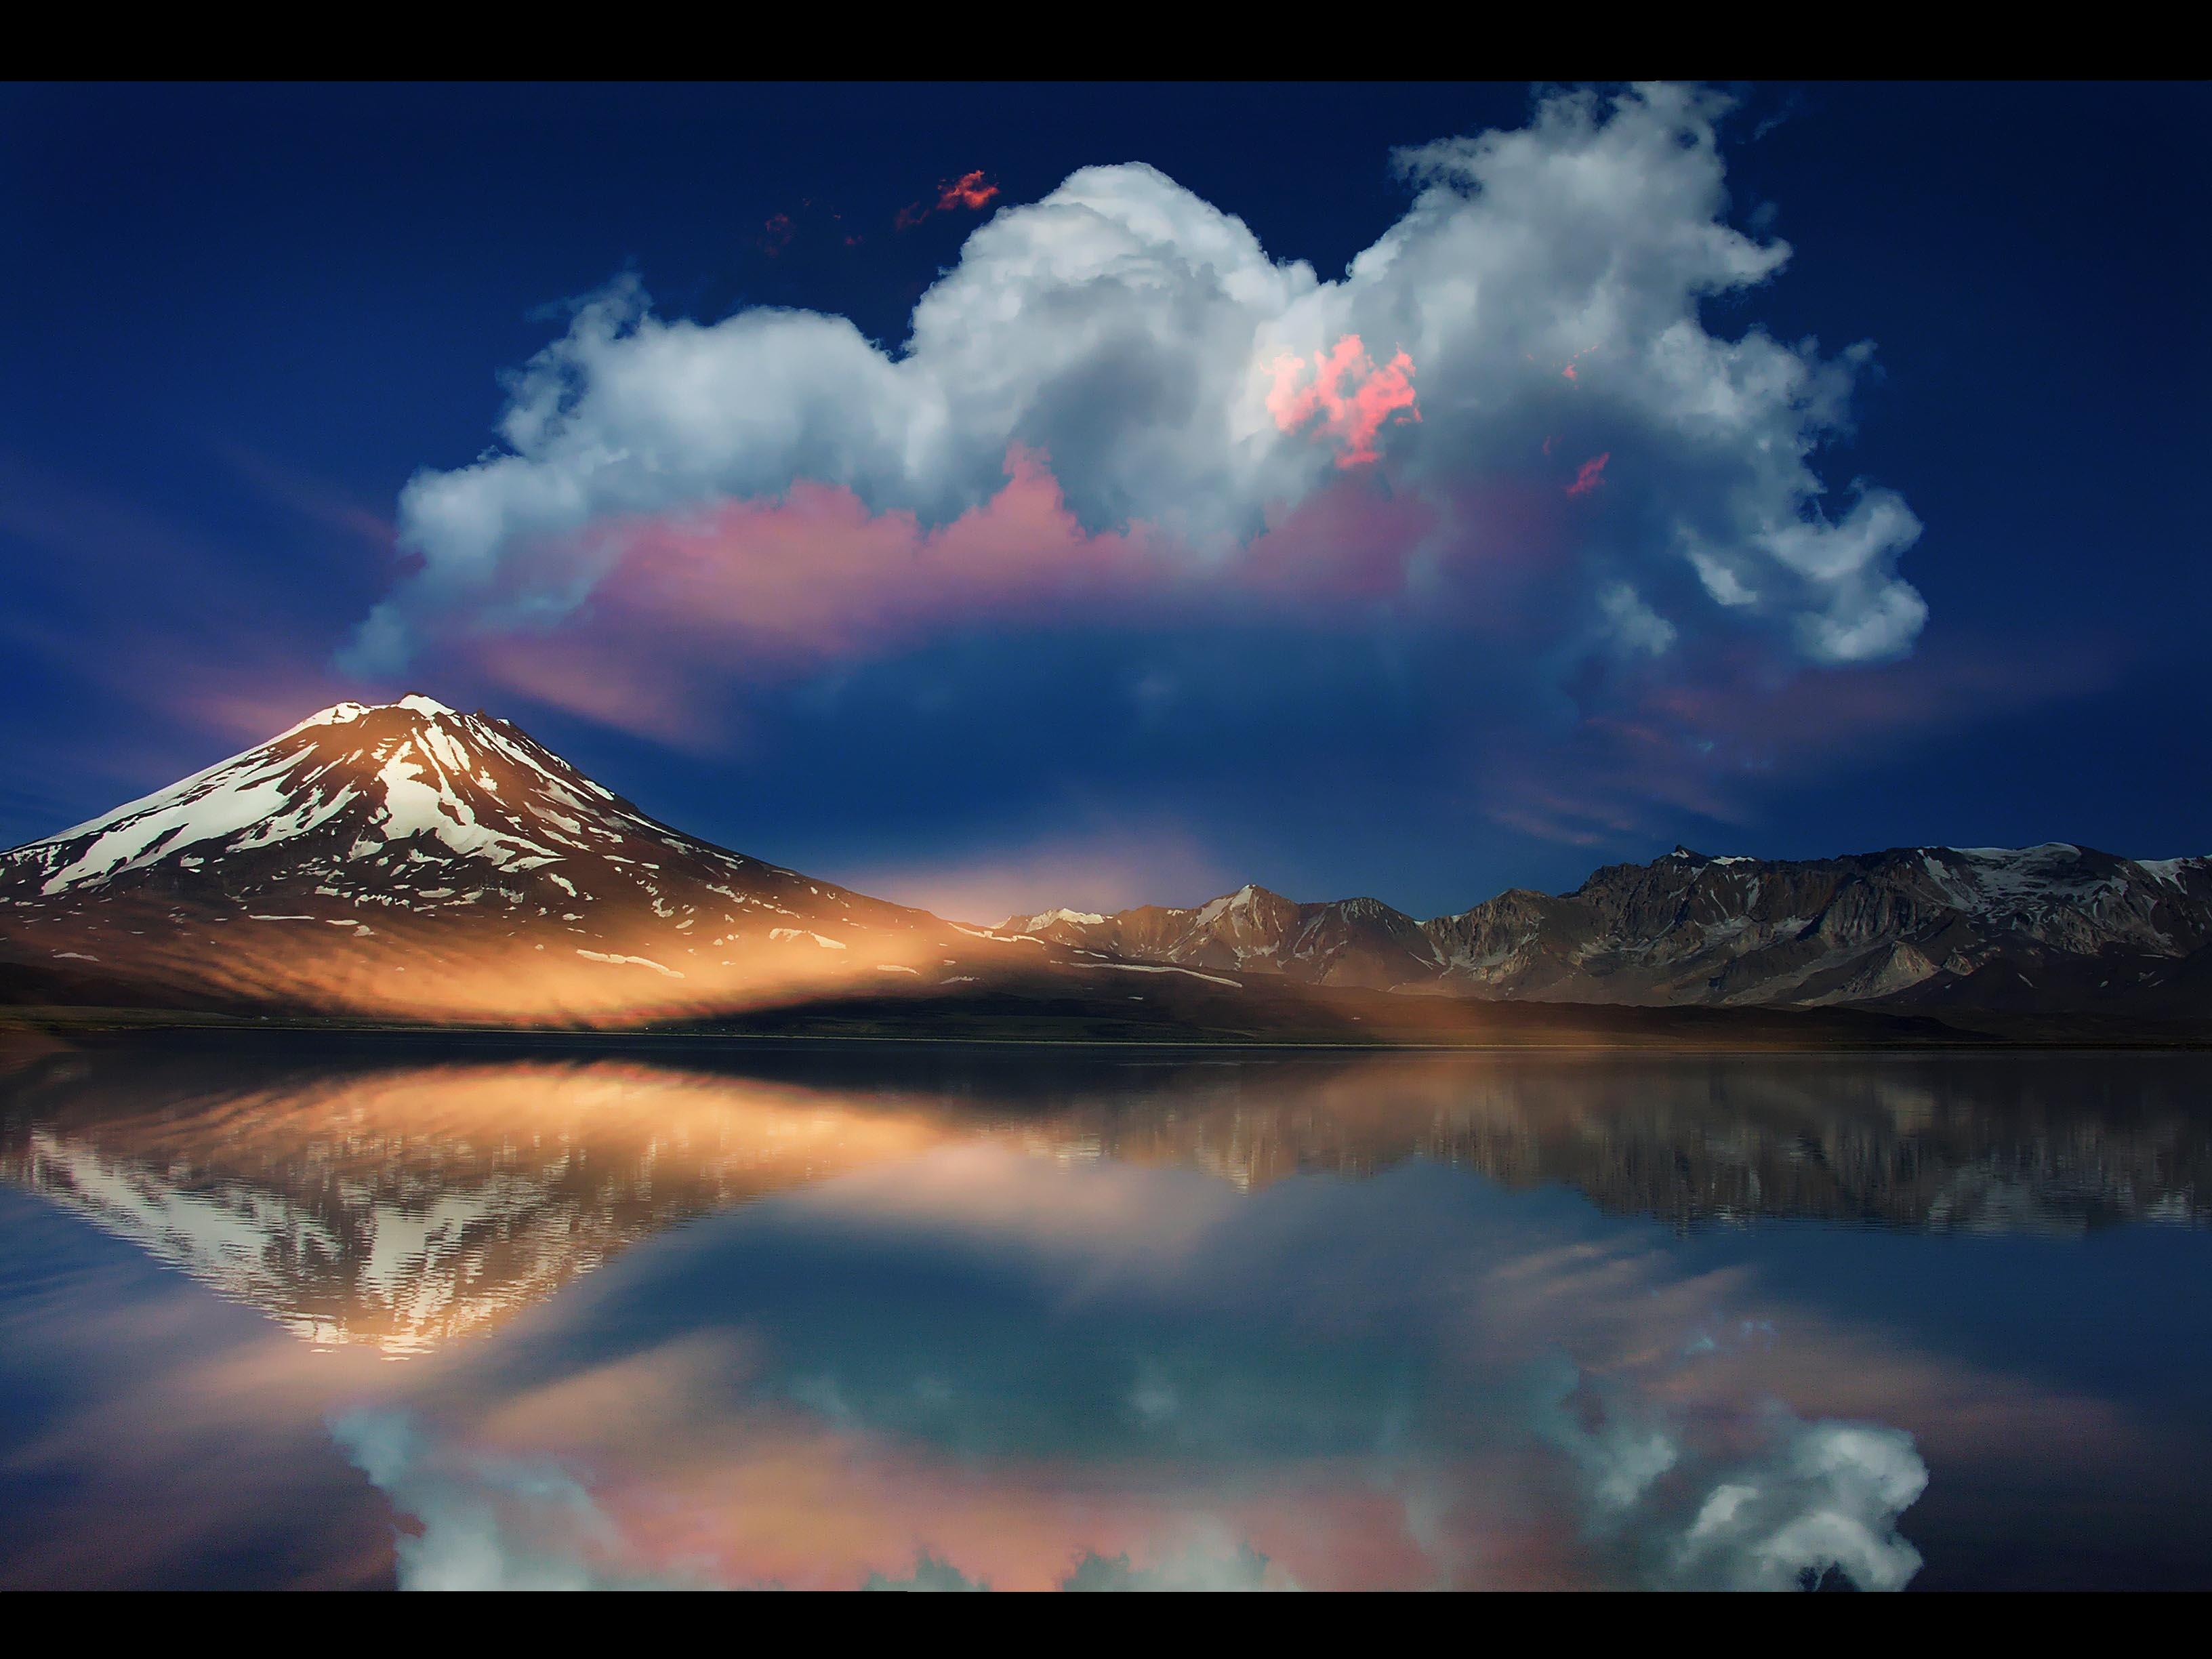 mountains, clouds, landscapes - desktop wallpaper